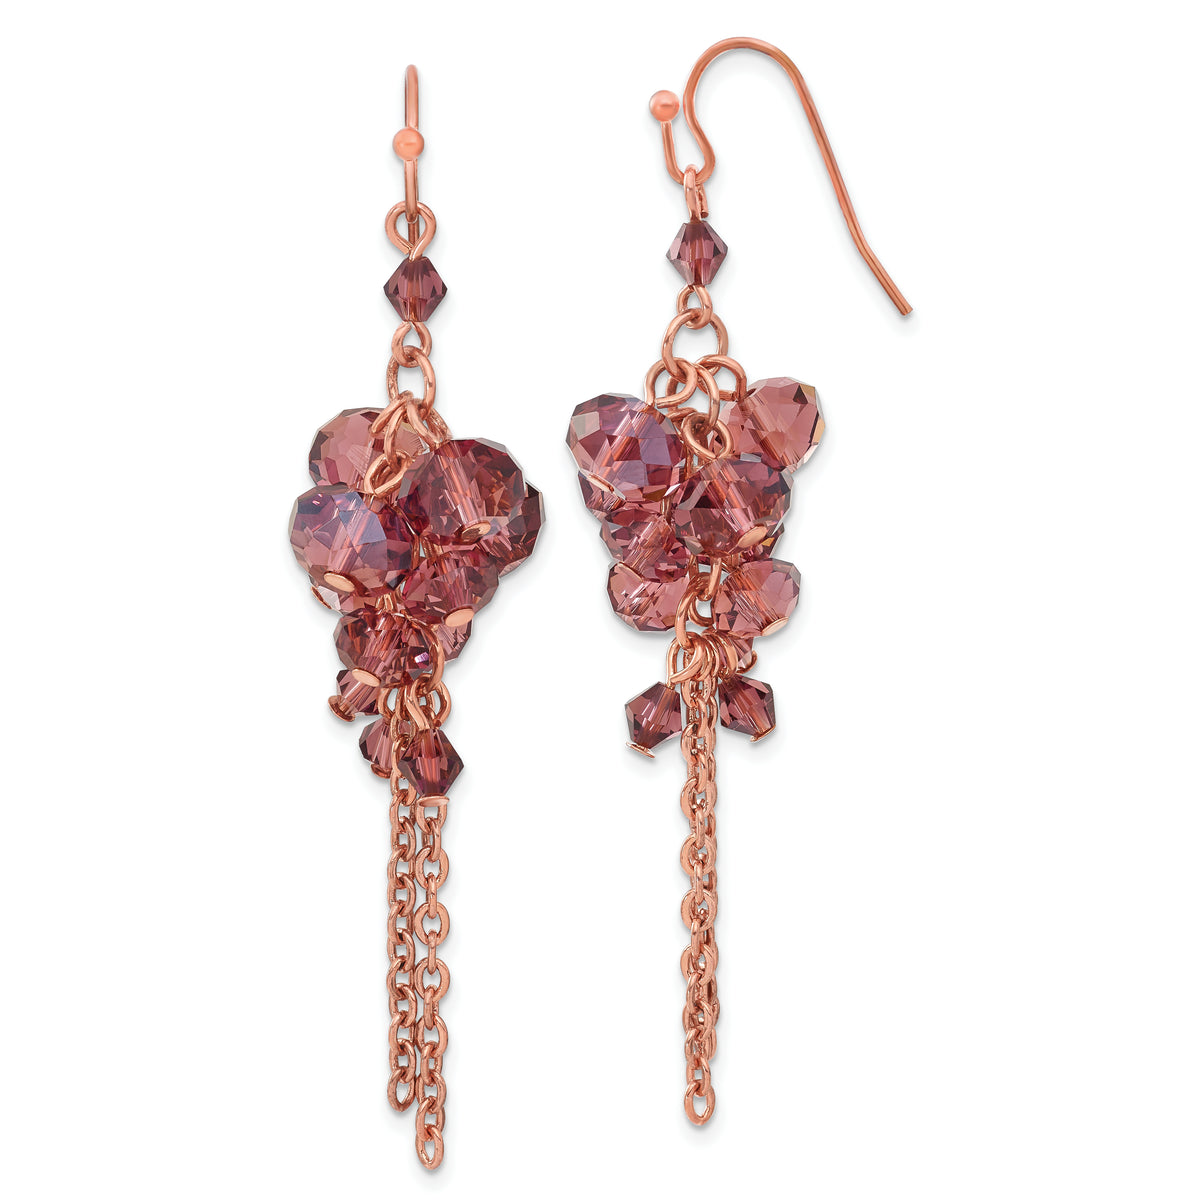 1928 Brass-tone Purple Glass Beads Cluster Dangle Earrings